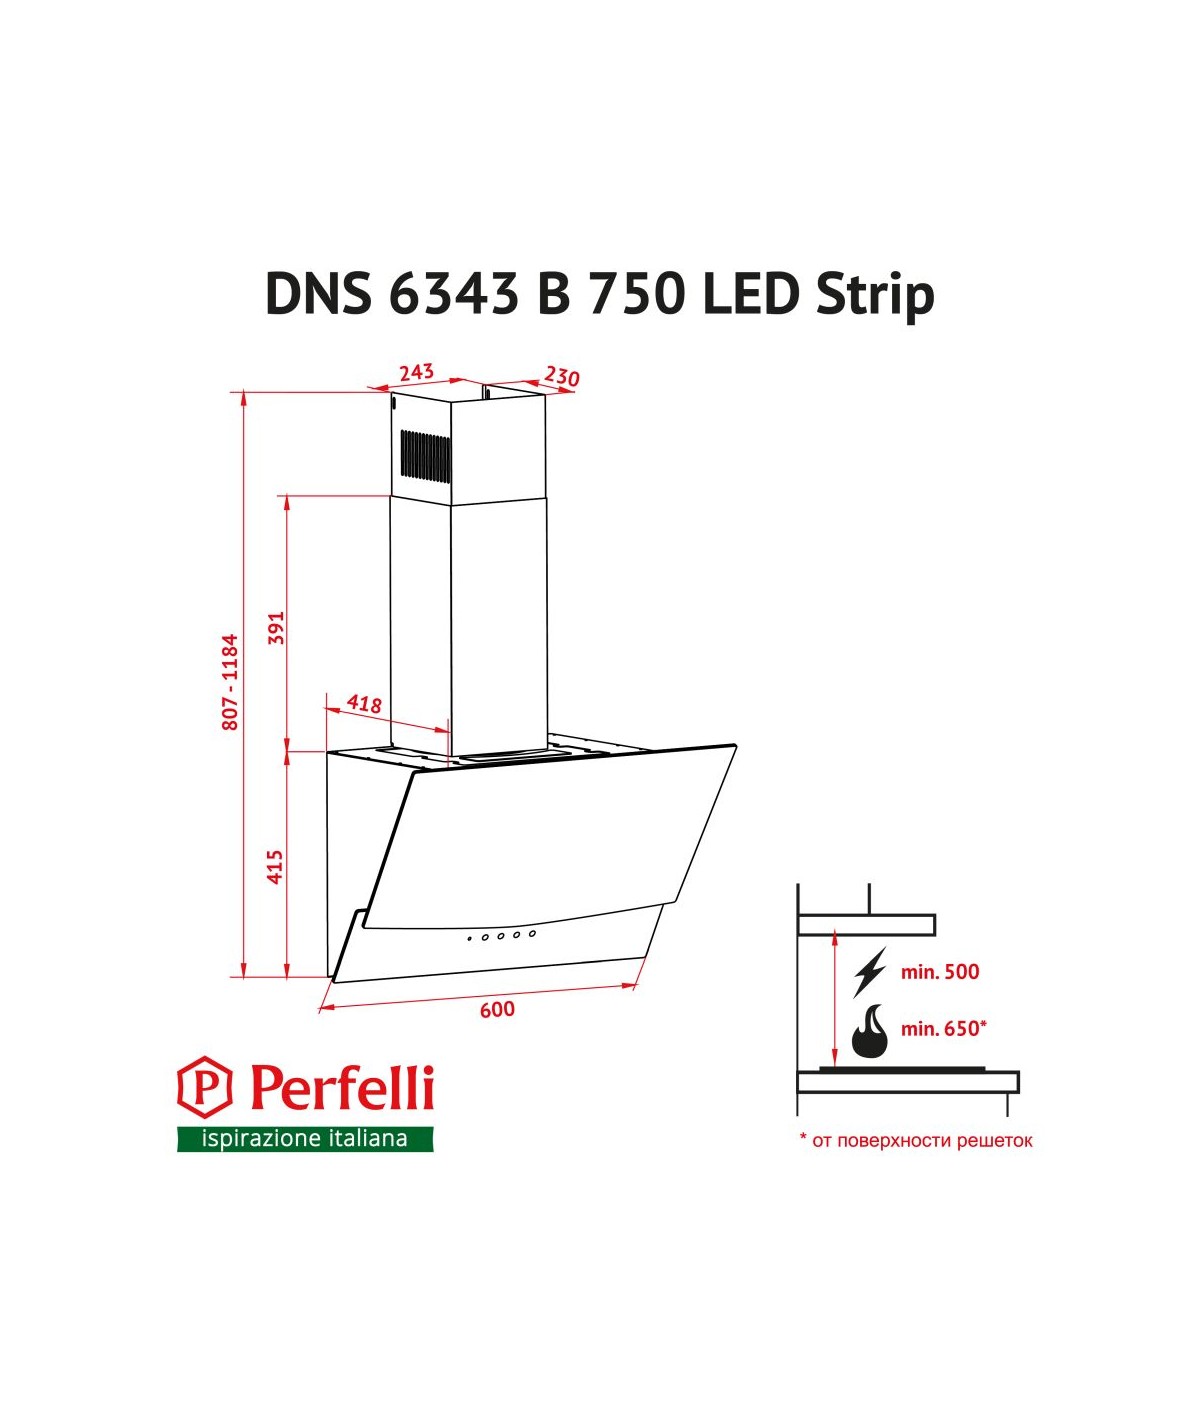 Perfelli DNS 6343 B 750 BL LED Strip Габаритные размеры